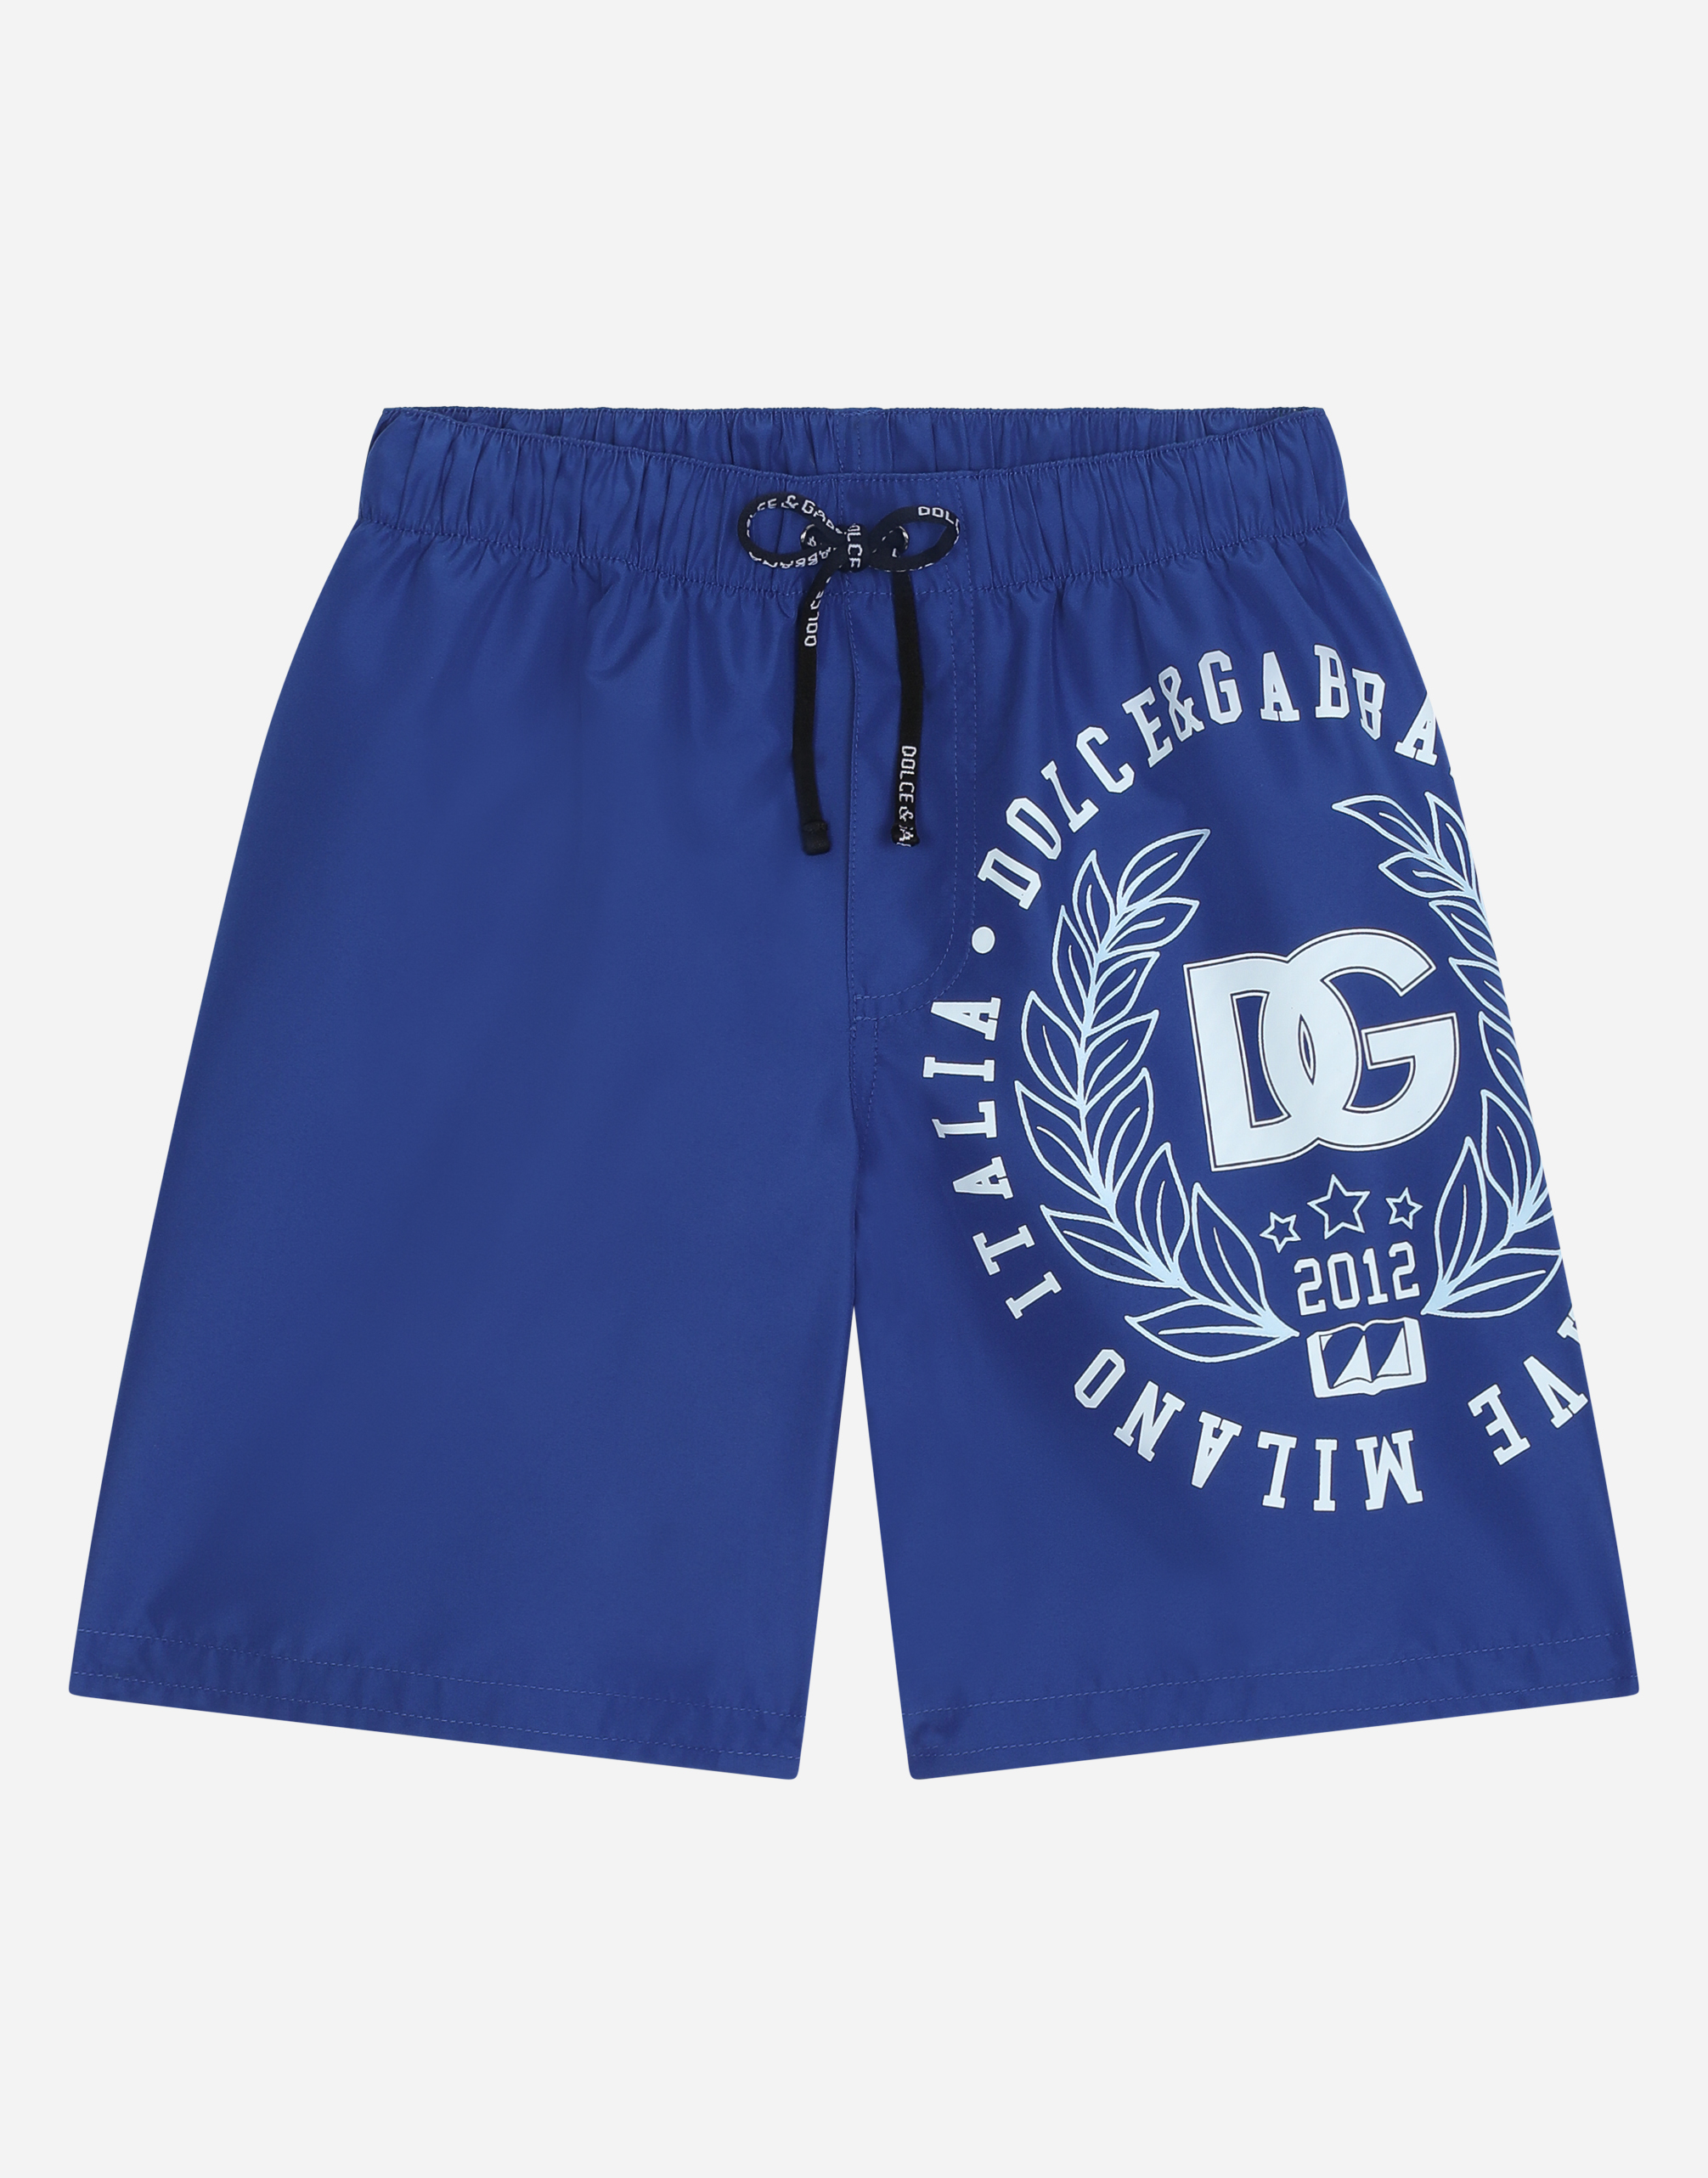 Nylon swim trunks with DG laurel logo in Blue